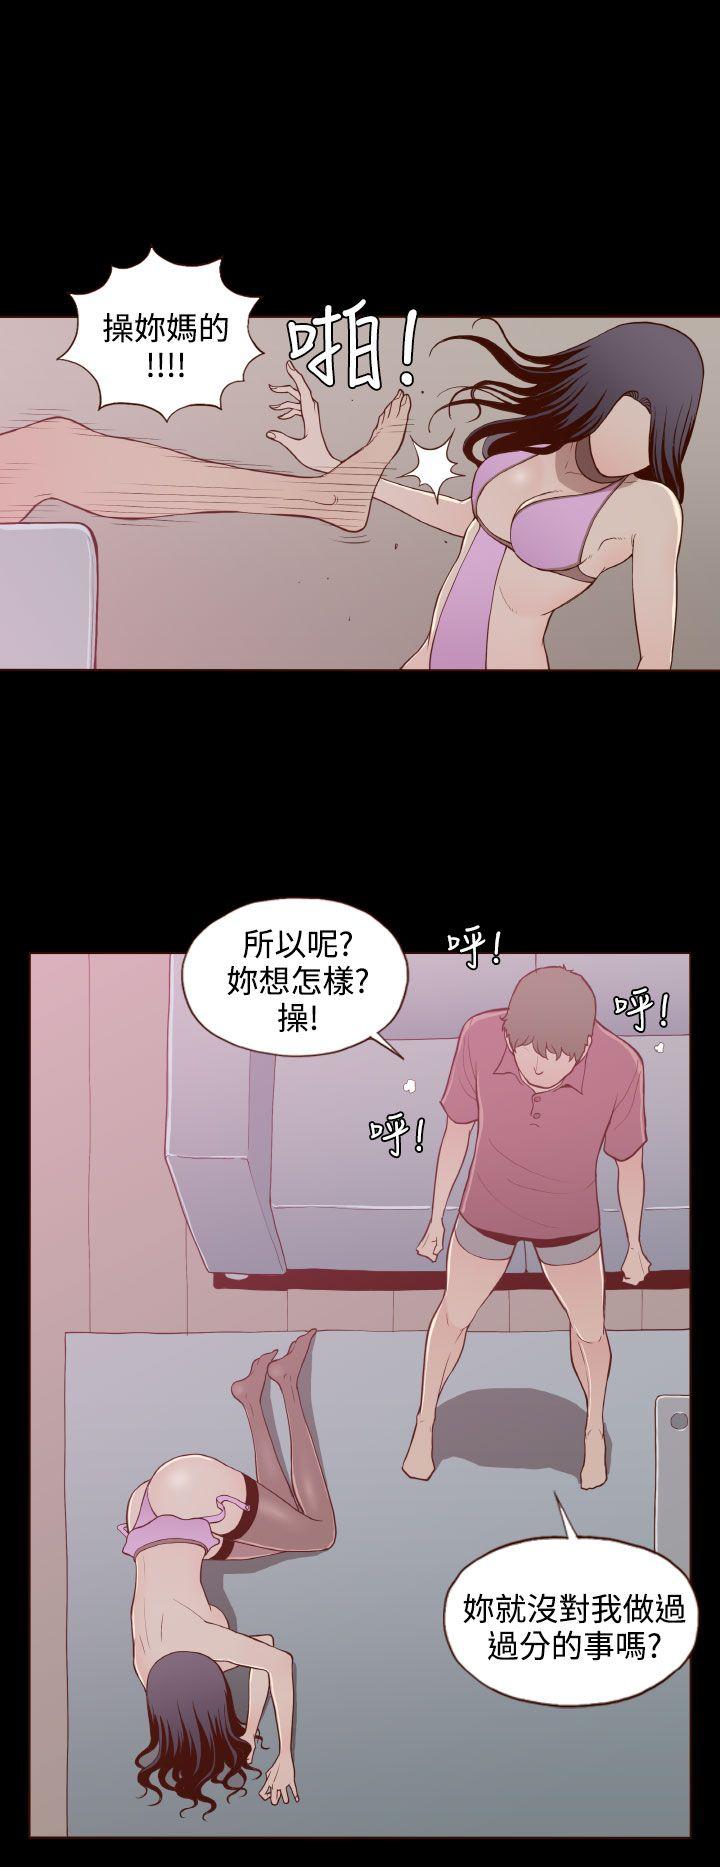 韩国污漫画 無法隱藏 第20话 18